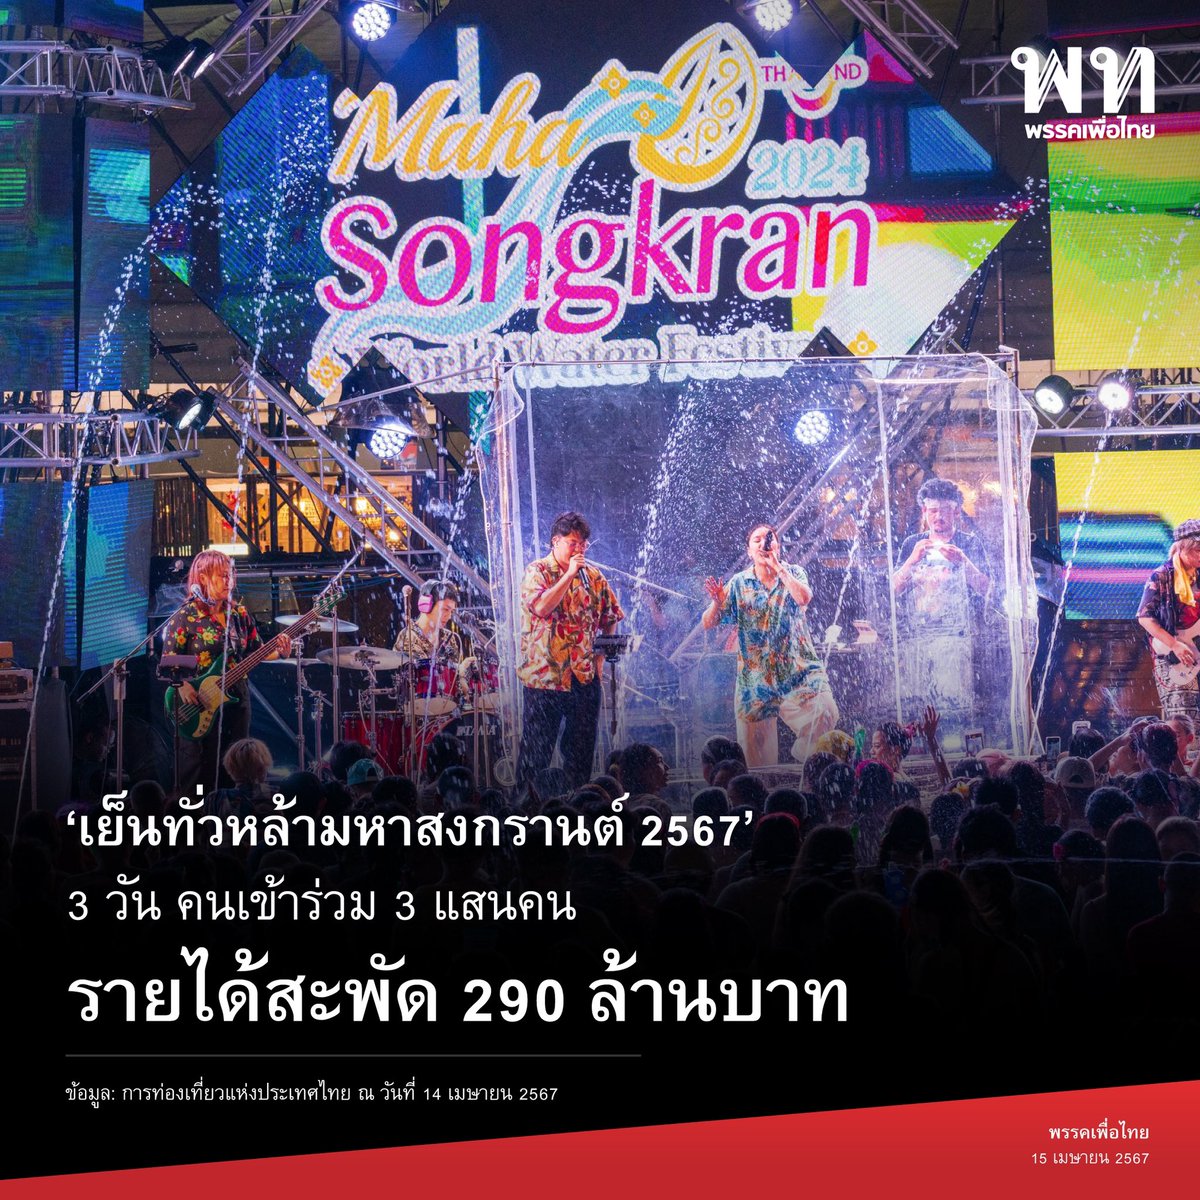 ‘เย็นทั่วหล้ามหาสงกรานต์ 2567’ 💦 3 วัน คนเข้าร่วม 3 แสนคน รายได้สะพัด 290 ล้านบาท

การท่องเที่ยวแห่งประเทศไทย (ททท.) เผยผลการจัดงาน Maha Songkran World Water Festival 2024 เย็นทั่วหล้า มหาสงกรานต์ 2567 ณ บริเวณถนนราชดำเนินกลางและพื้นที่ท้องสนามหลวง ในช่วง 3 วันแรก วันที่ 11-13